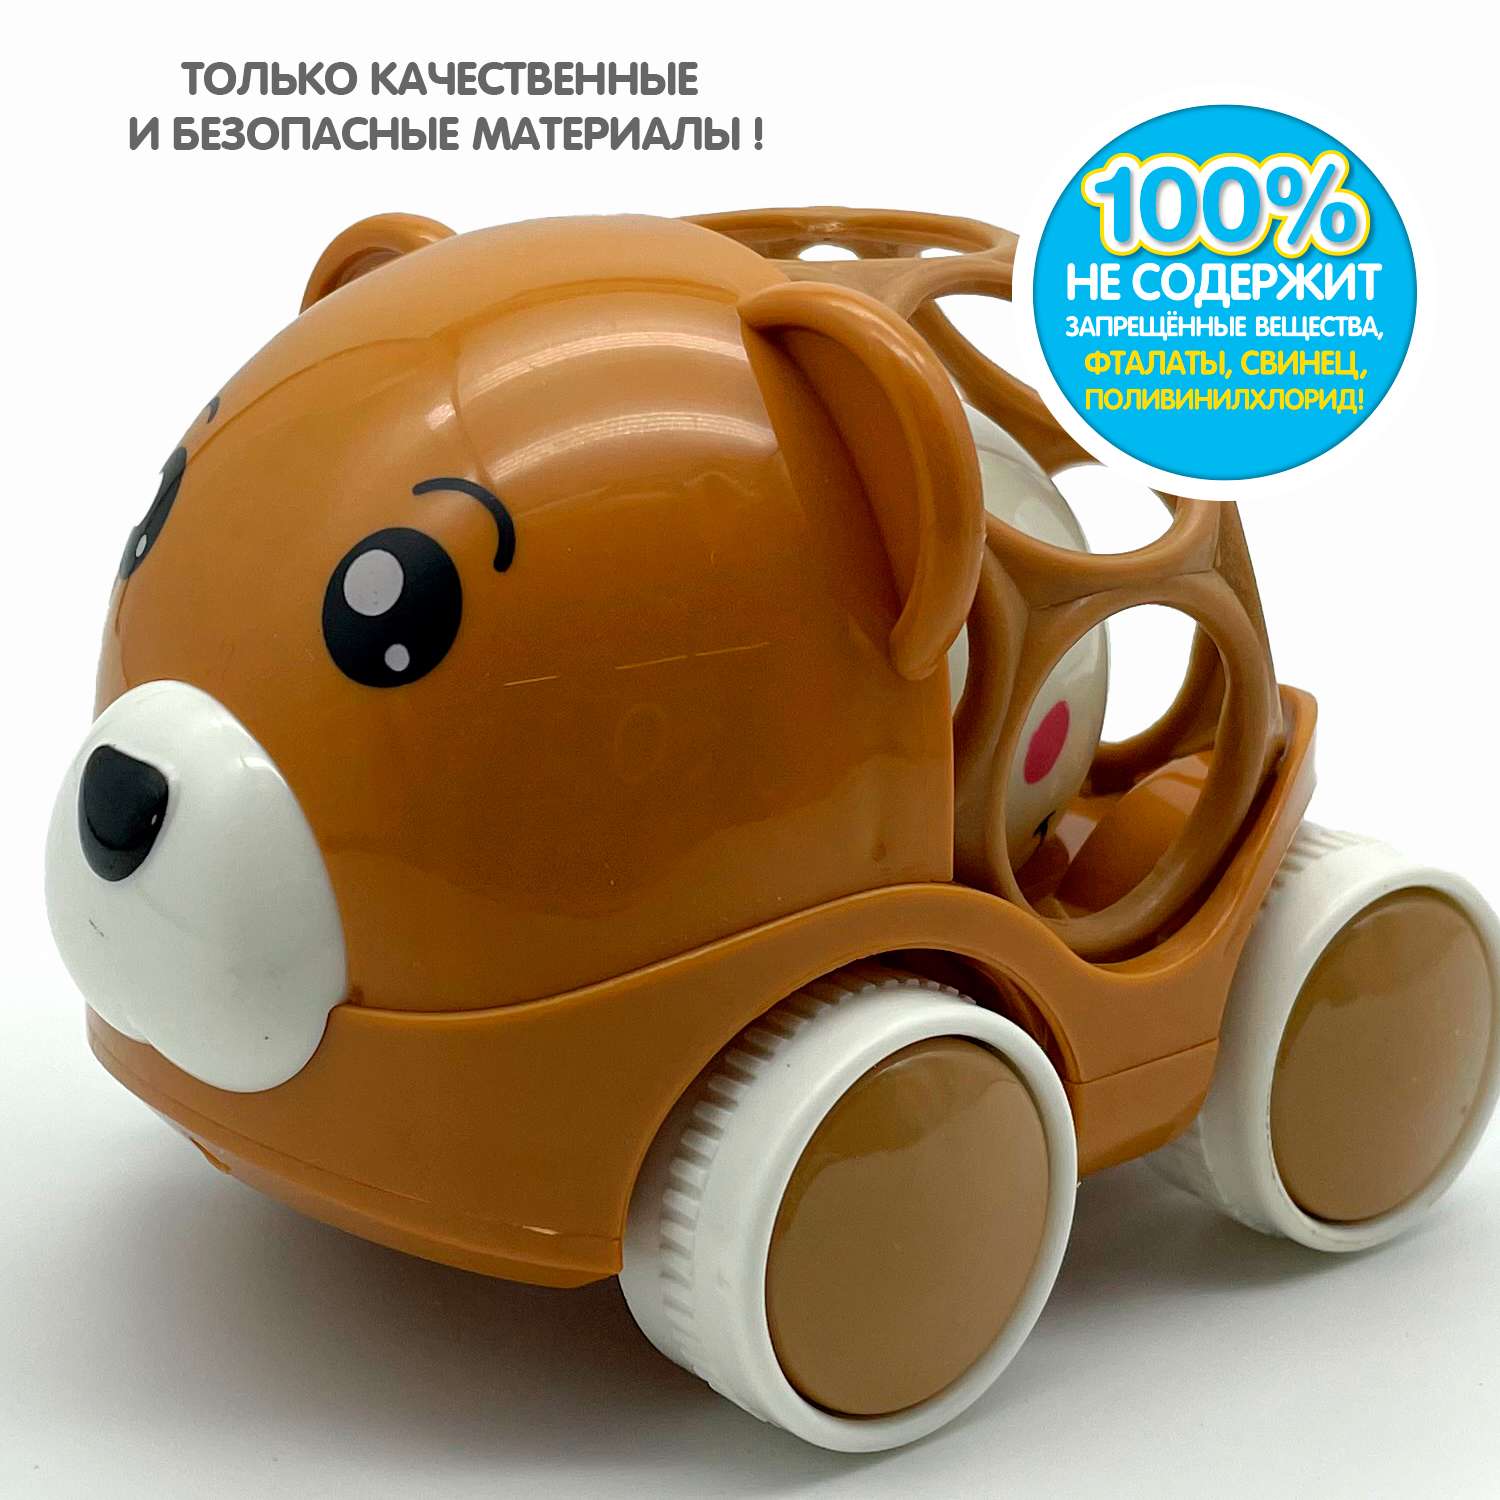 Машинка-Погремушка BONDIBON Медведь коричневого цвета с шаром серия Baby You - фото 11